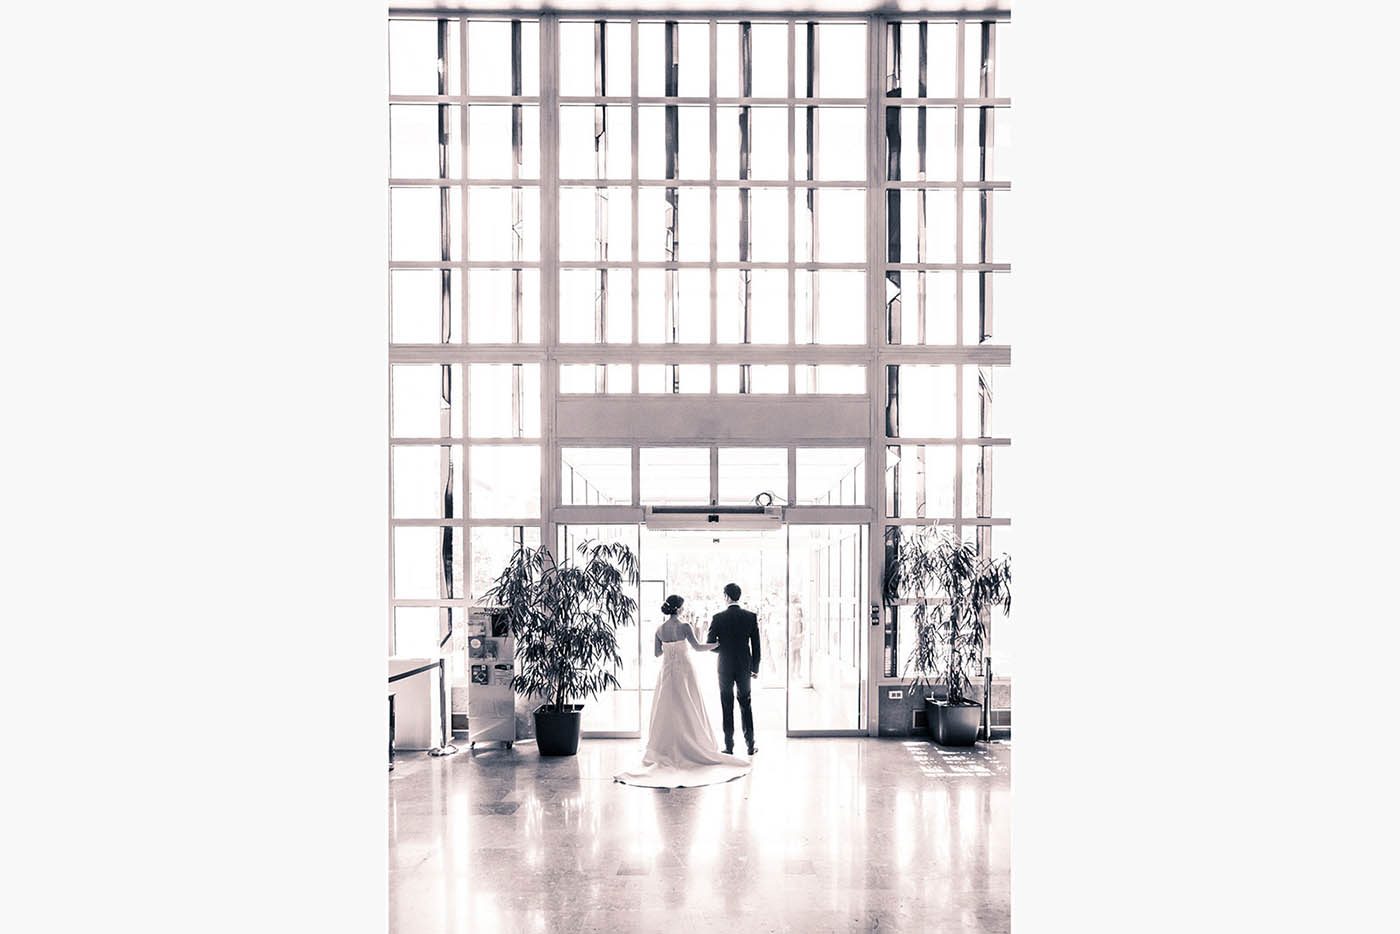 Le décor très moderne de la mairie de Colomiers accueille la sortie de ce couple fraichement uni par les liens du mariage